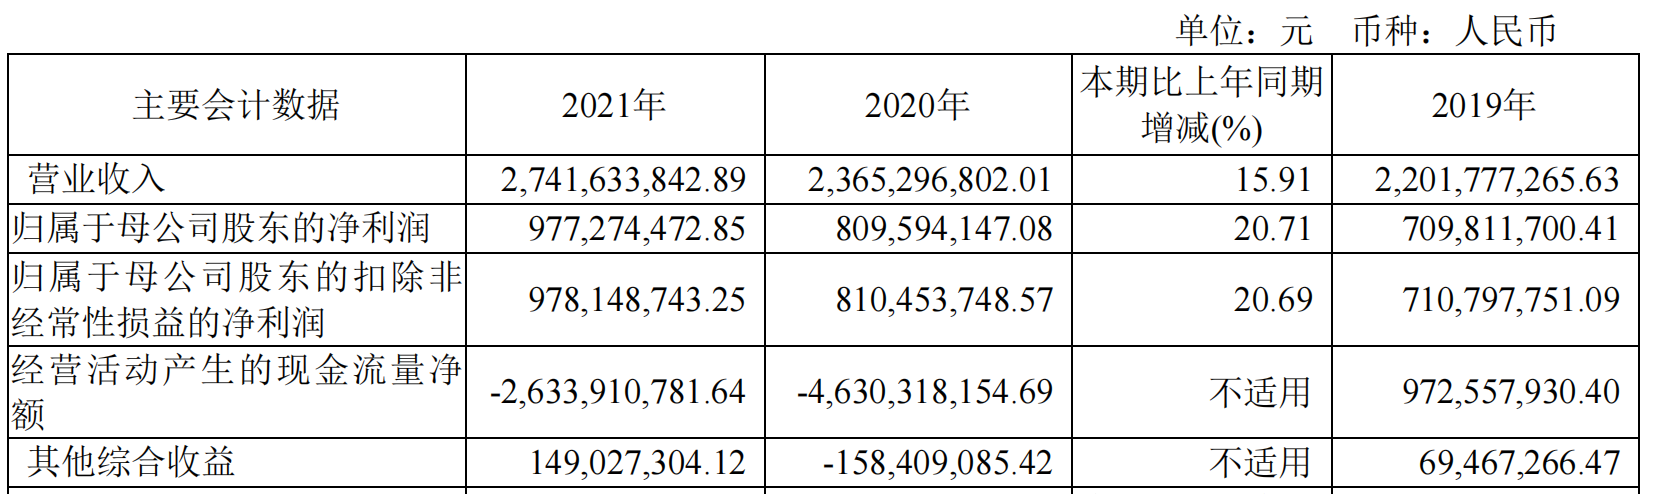 南京证券拟派发现金红利总额3.69亿元 一季度实现营收3.93亿元